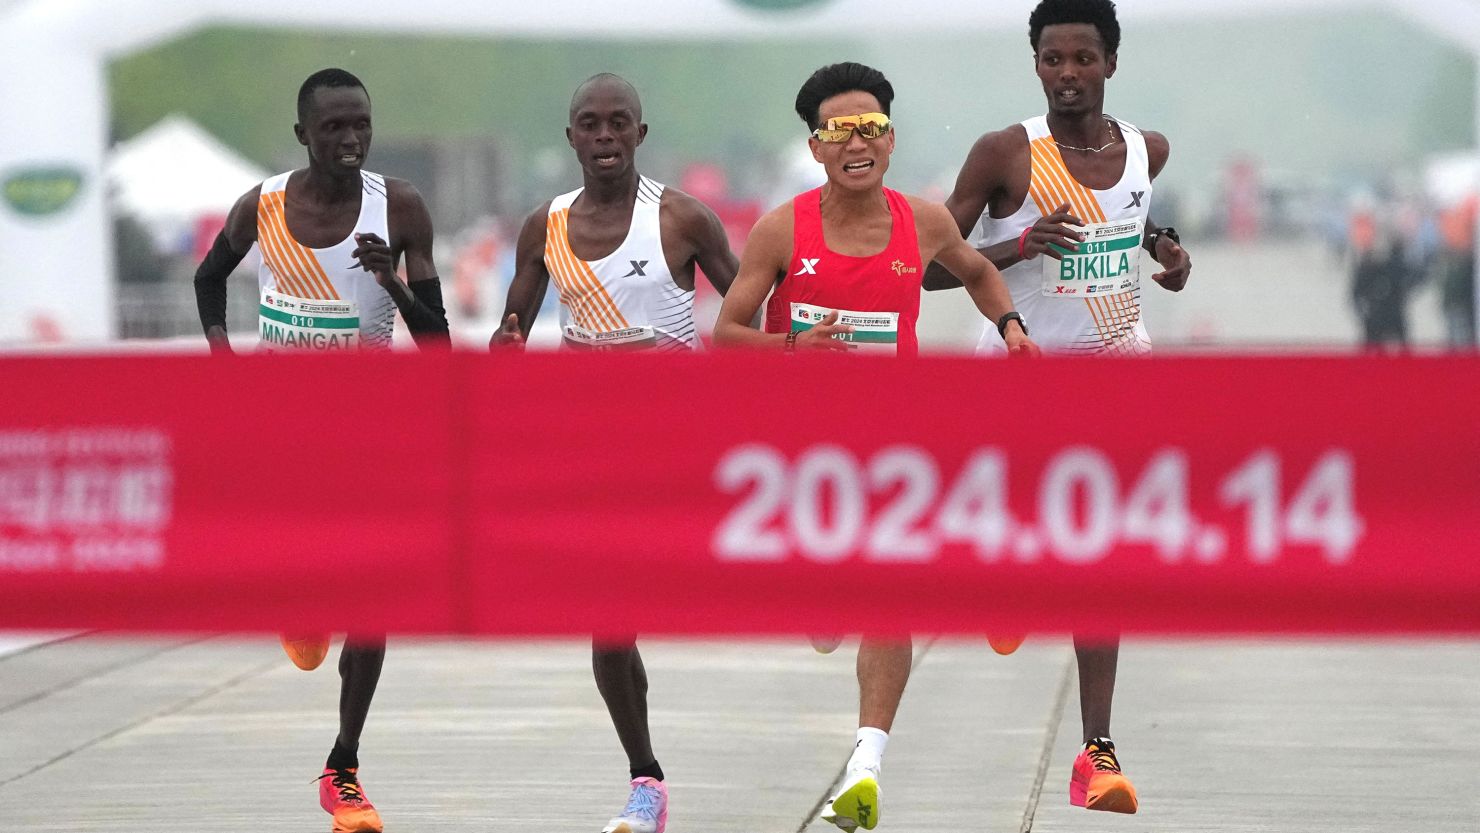 Despojan de sus medallas a los ganadores del medio maratón de Beijing luego de que un trío africano dejara ganar a un corredor chino